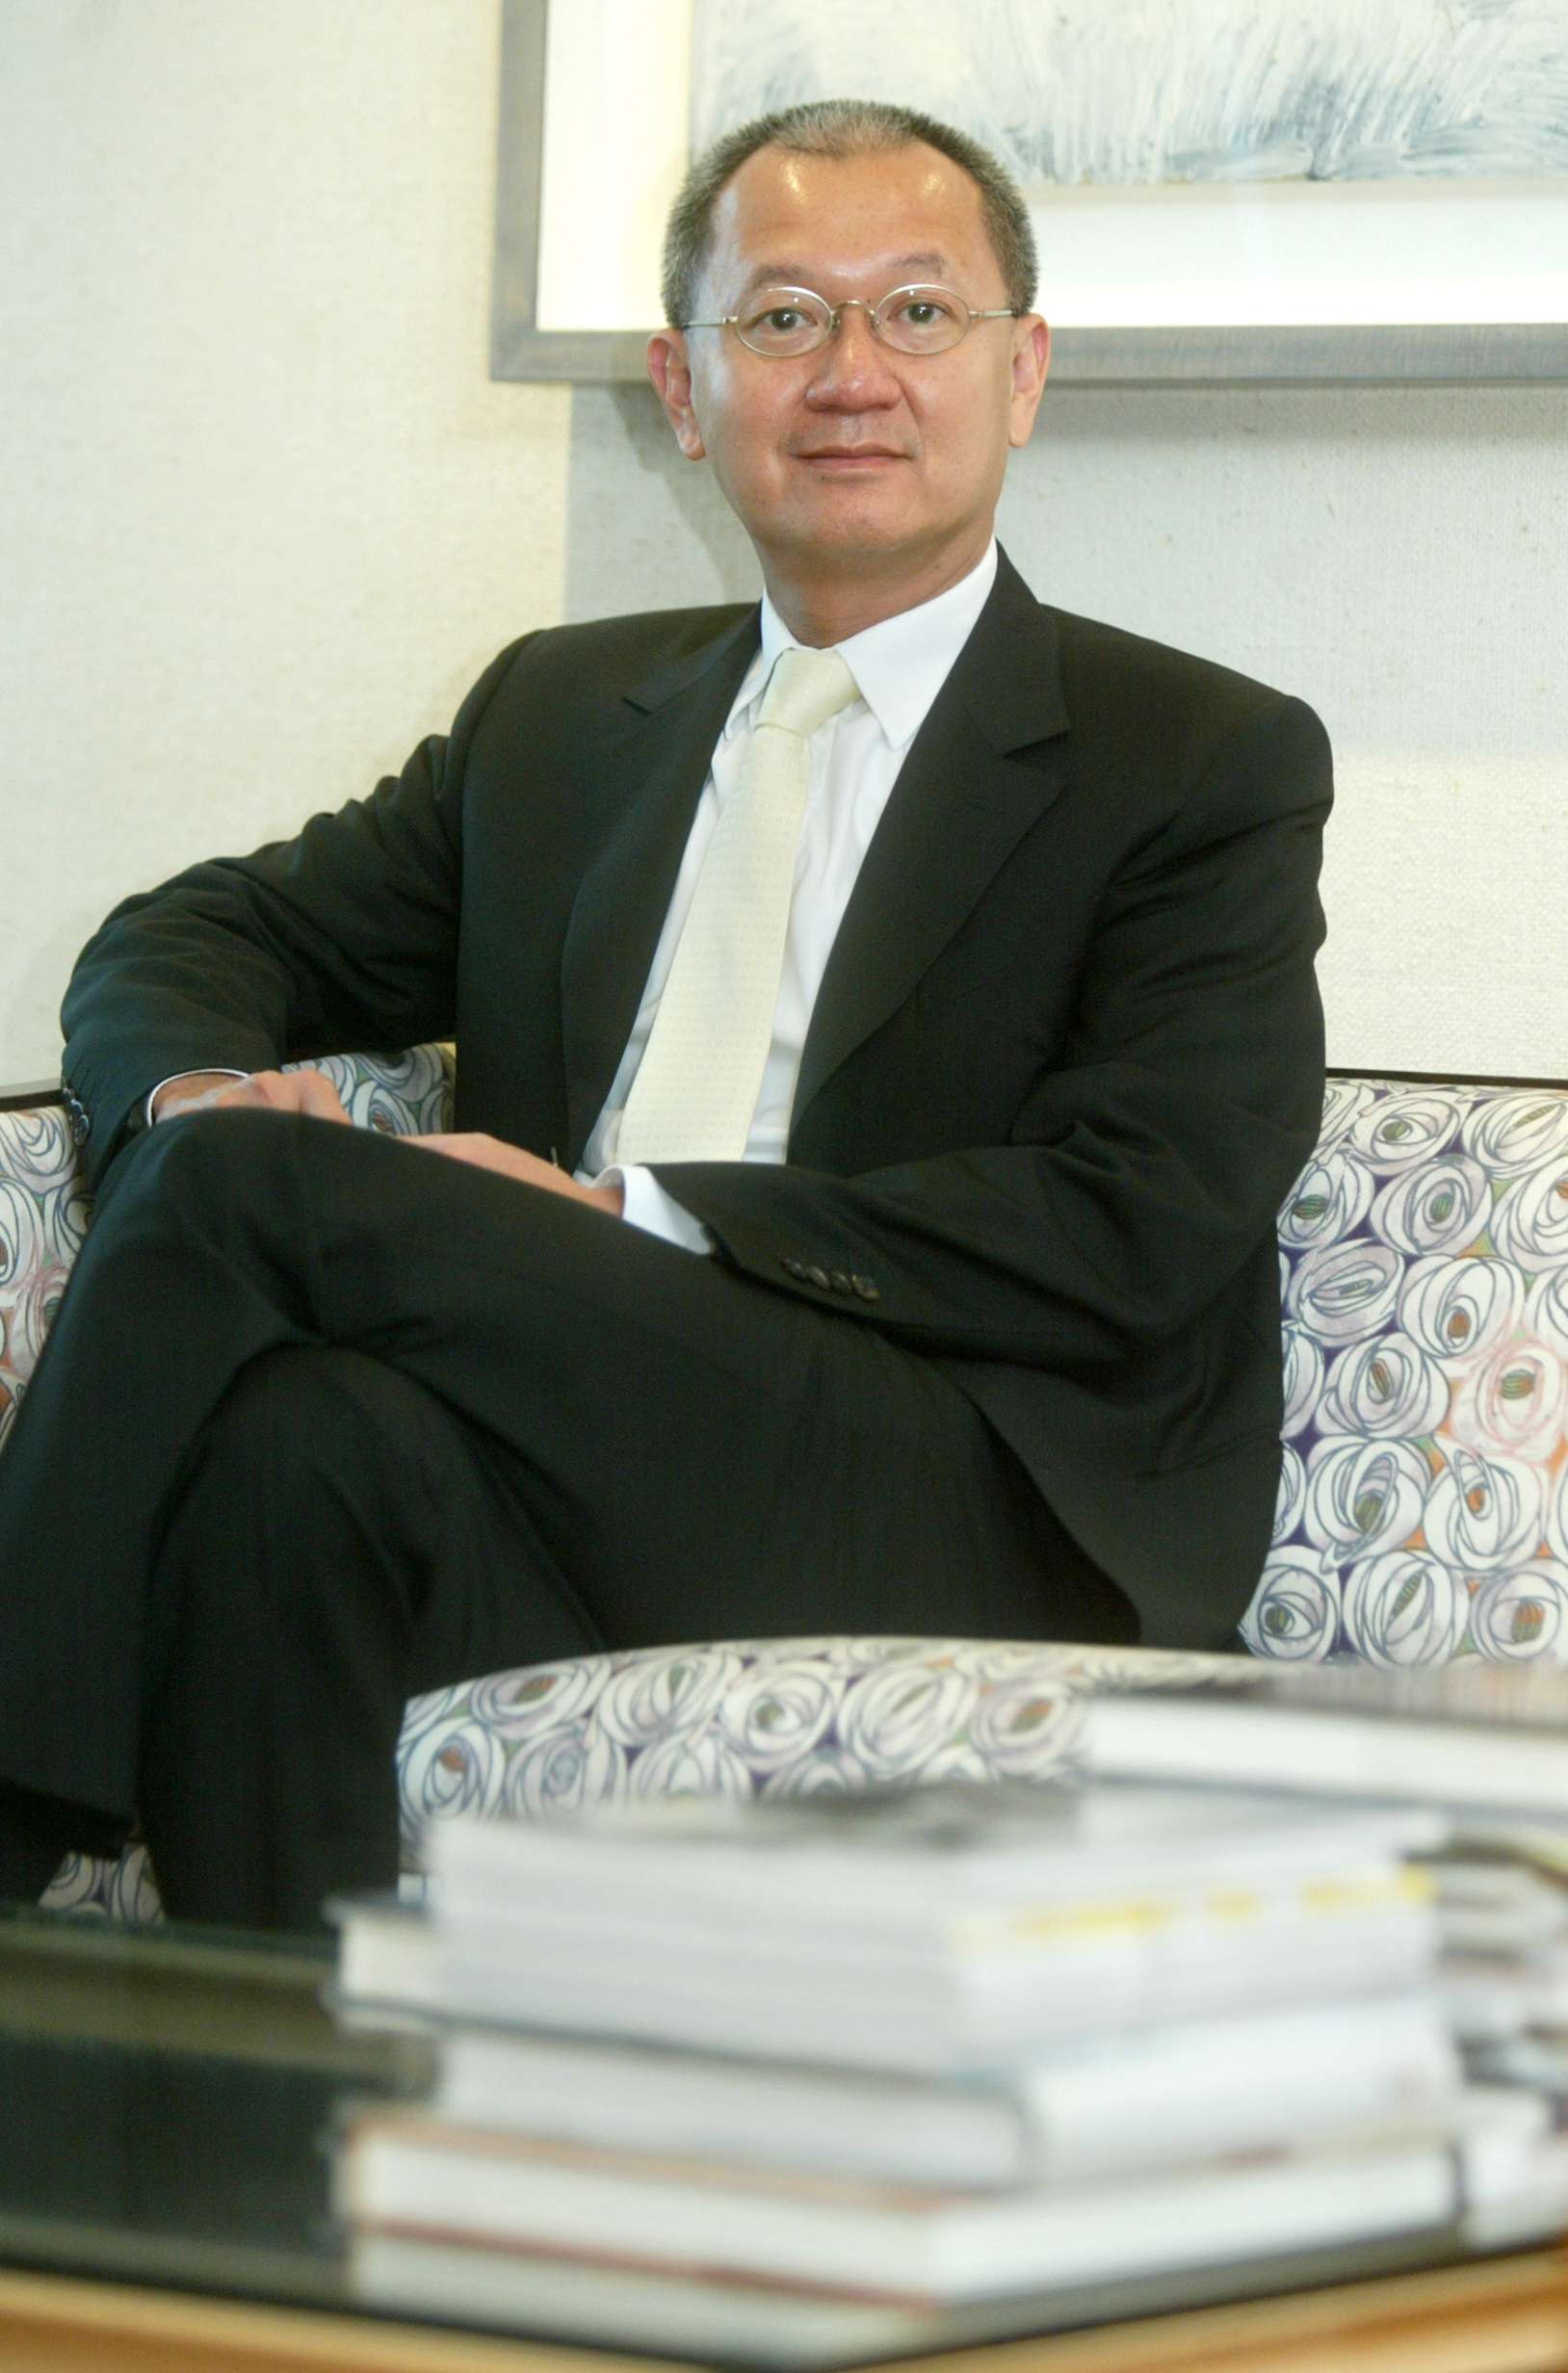 Pierre Chen, chairman